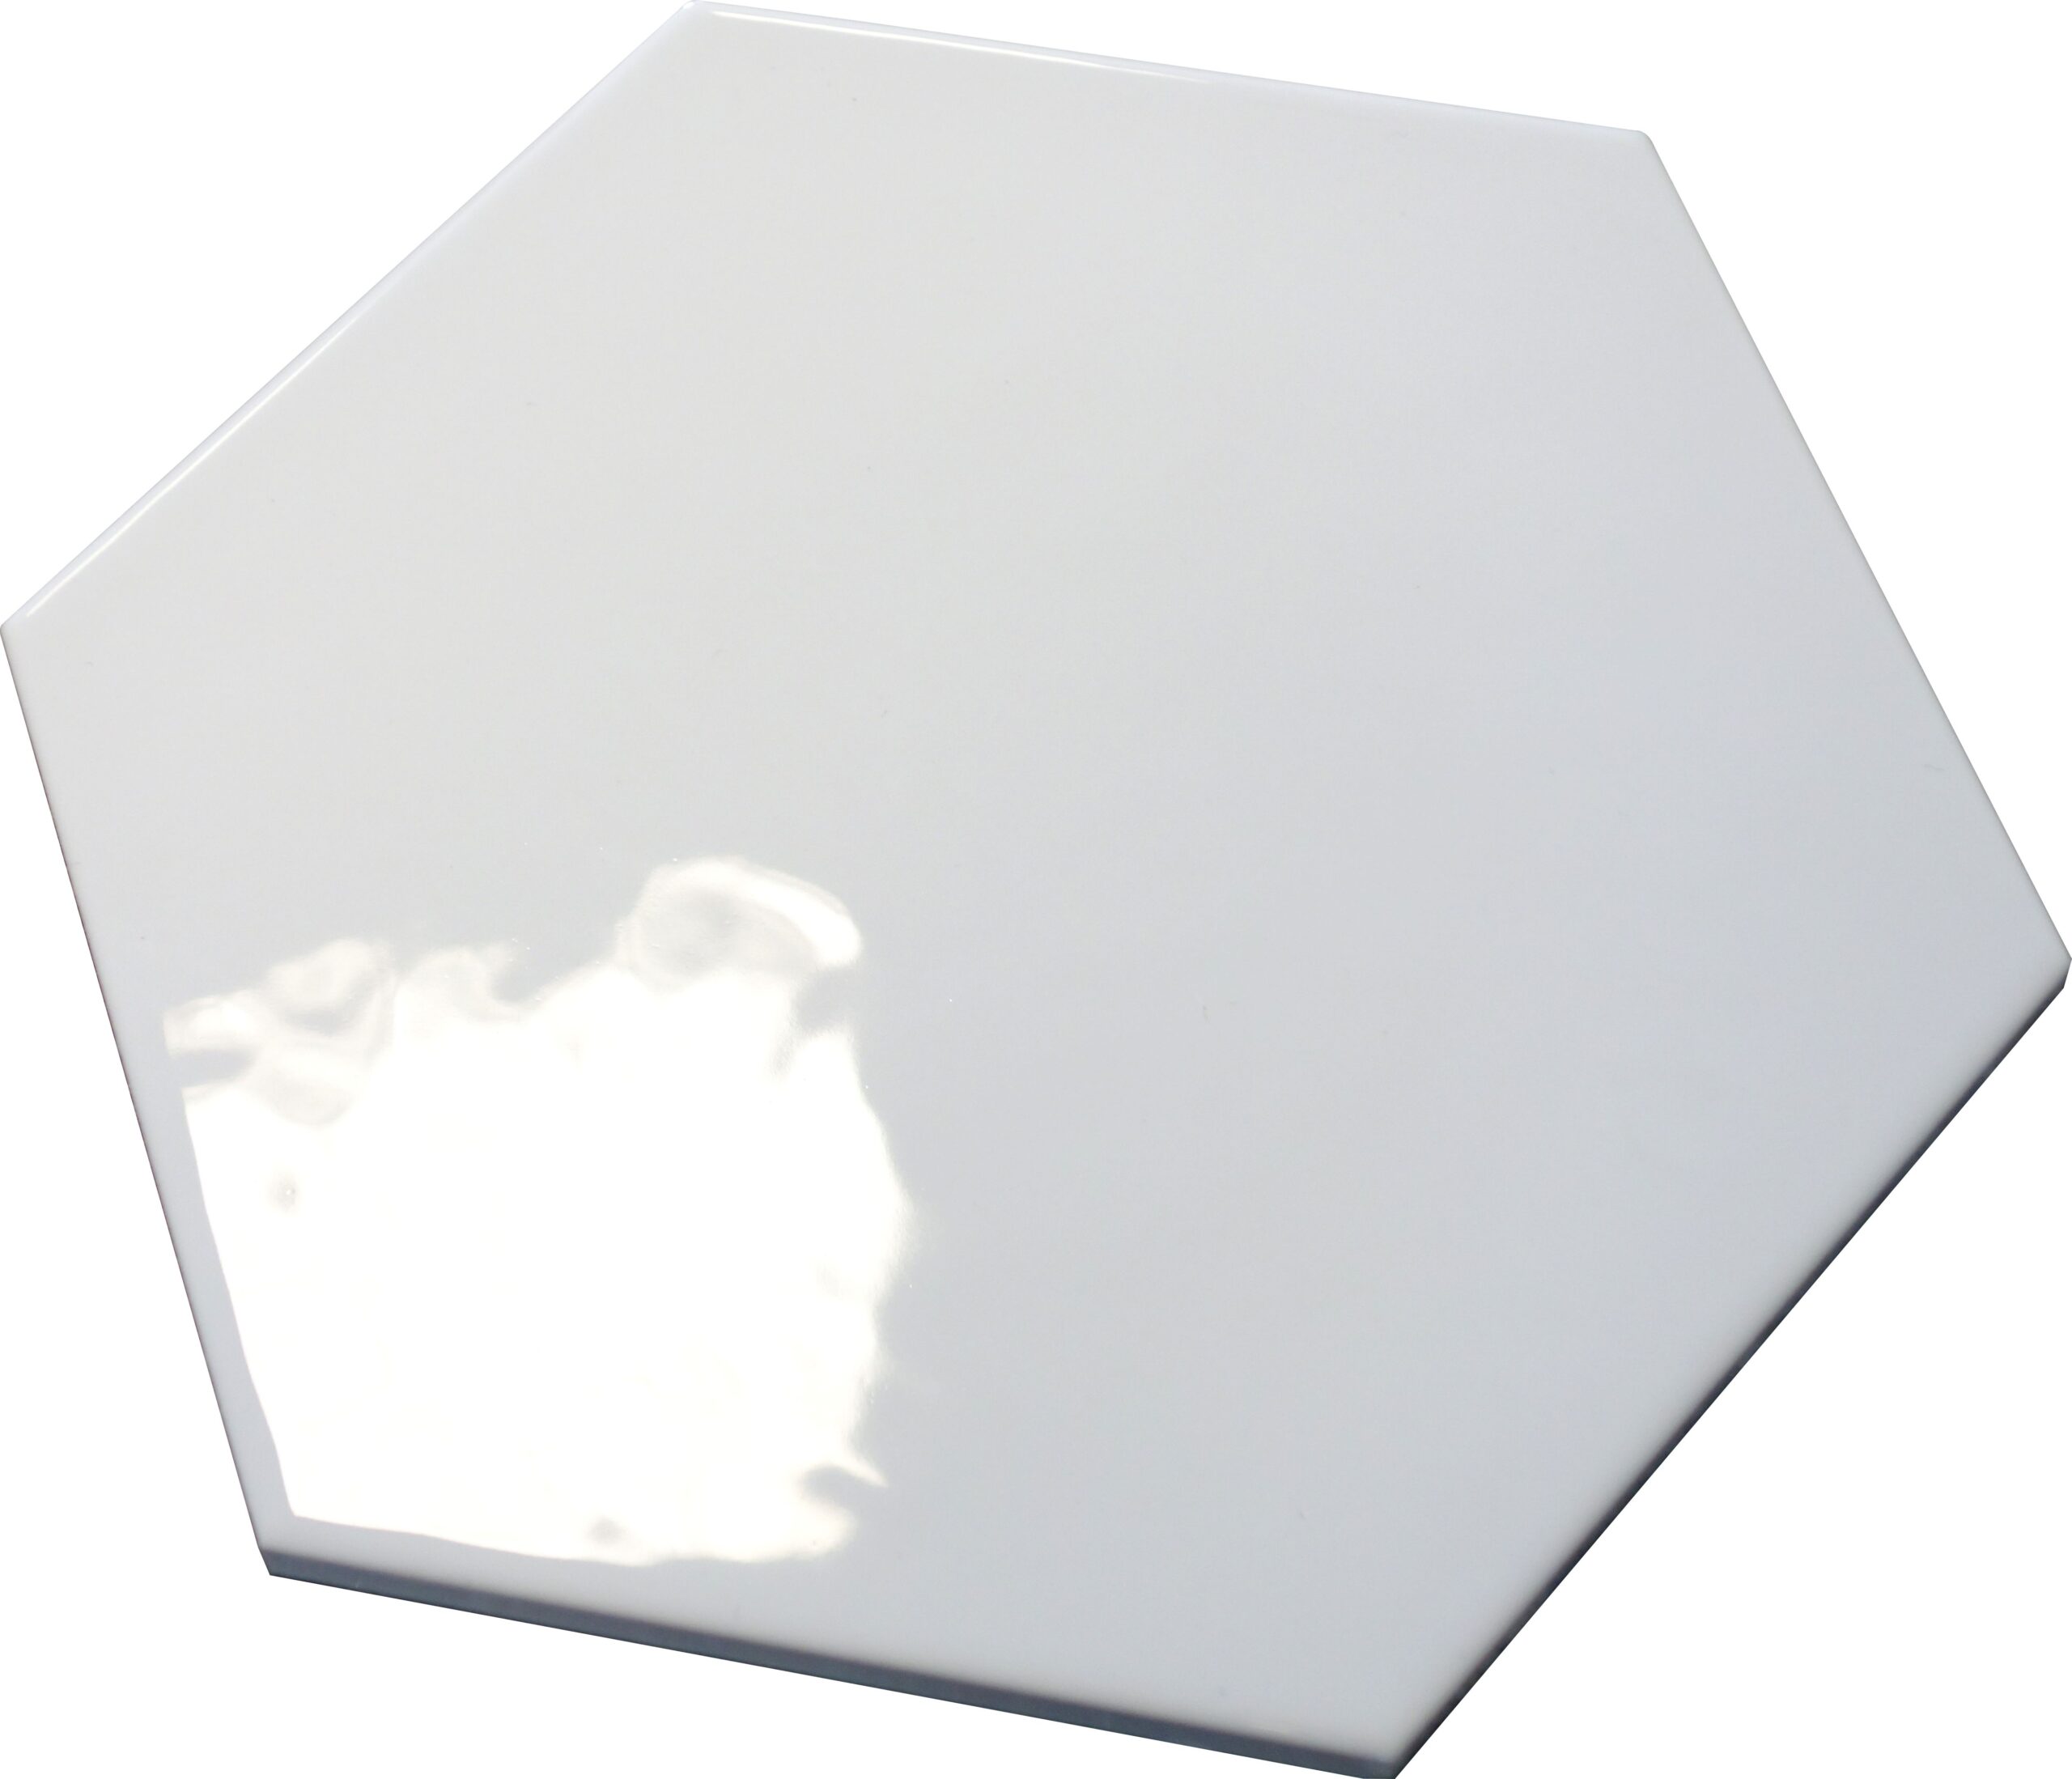 płytki heksagonalne białe HEXATILE BLANCO BRILLO 20x17